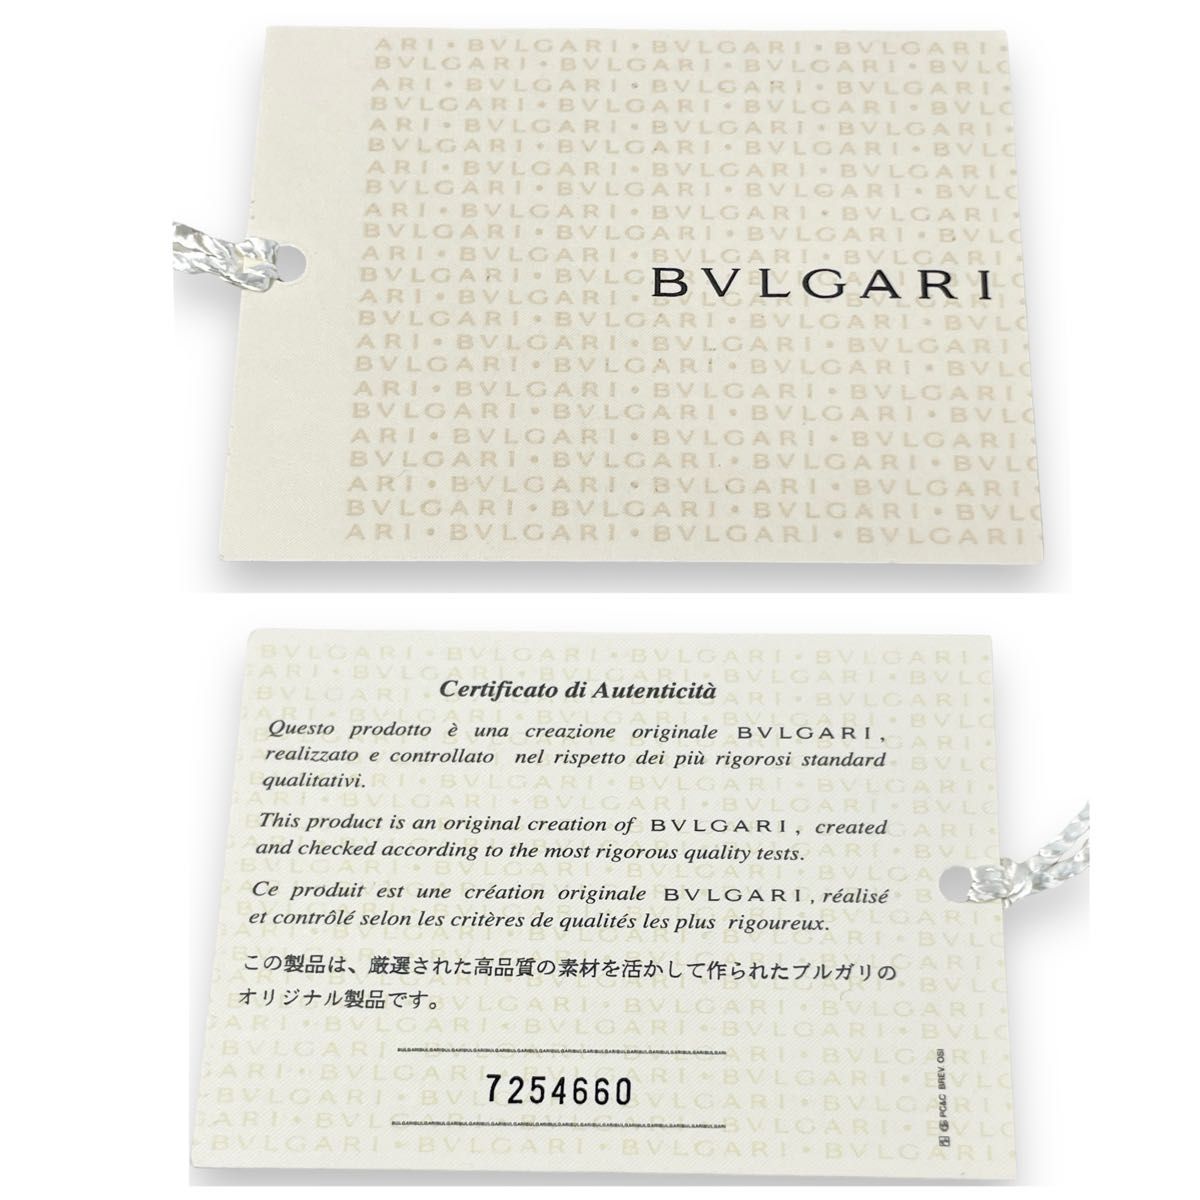 極美品タグ付 BVLGARI ブルガリネクタイ7つ折りセッテピエゲ セブンフォールド紺色ネイビーイタリア製シルク100%メンズ結婚